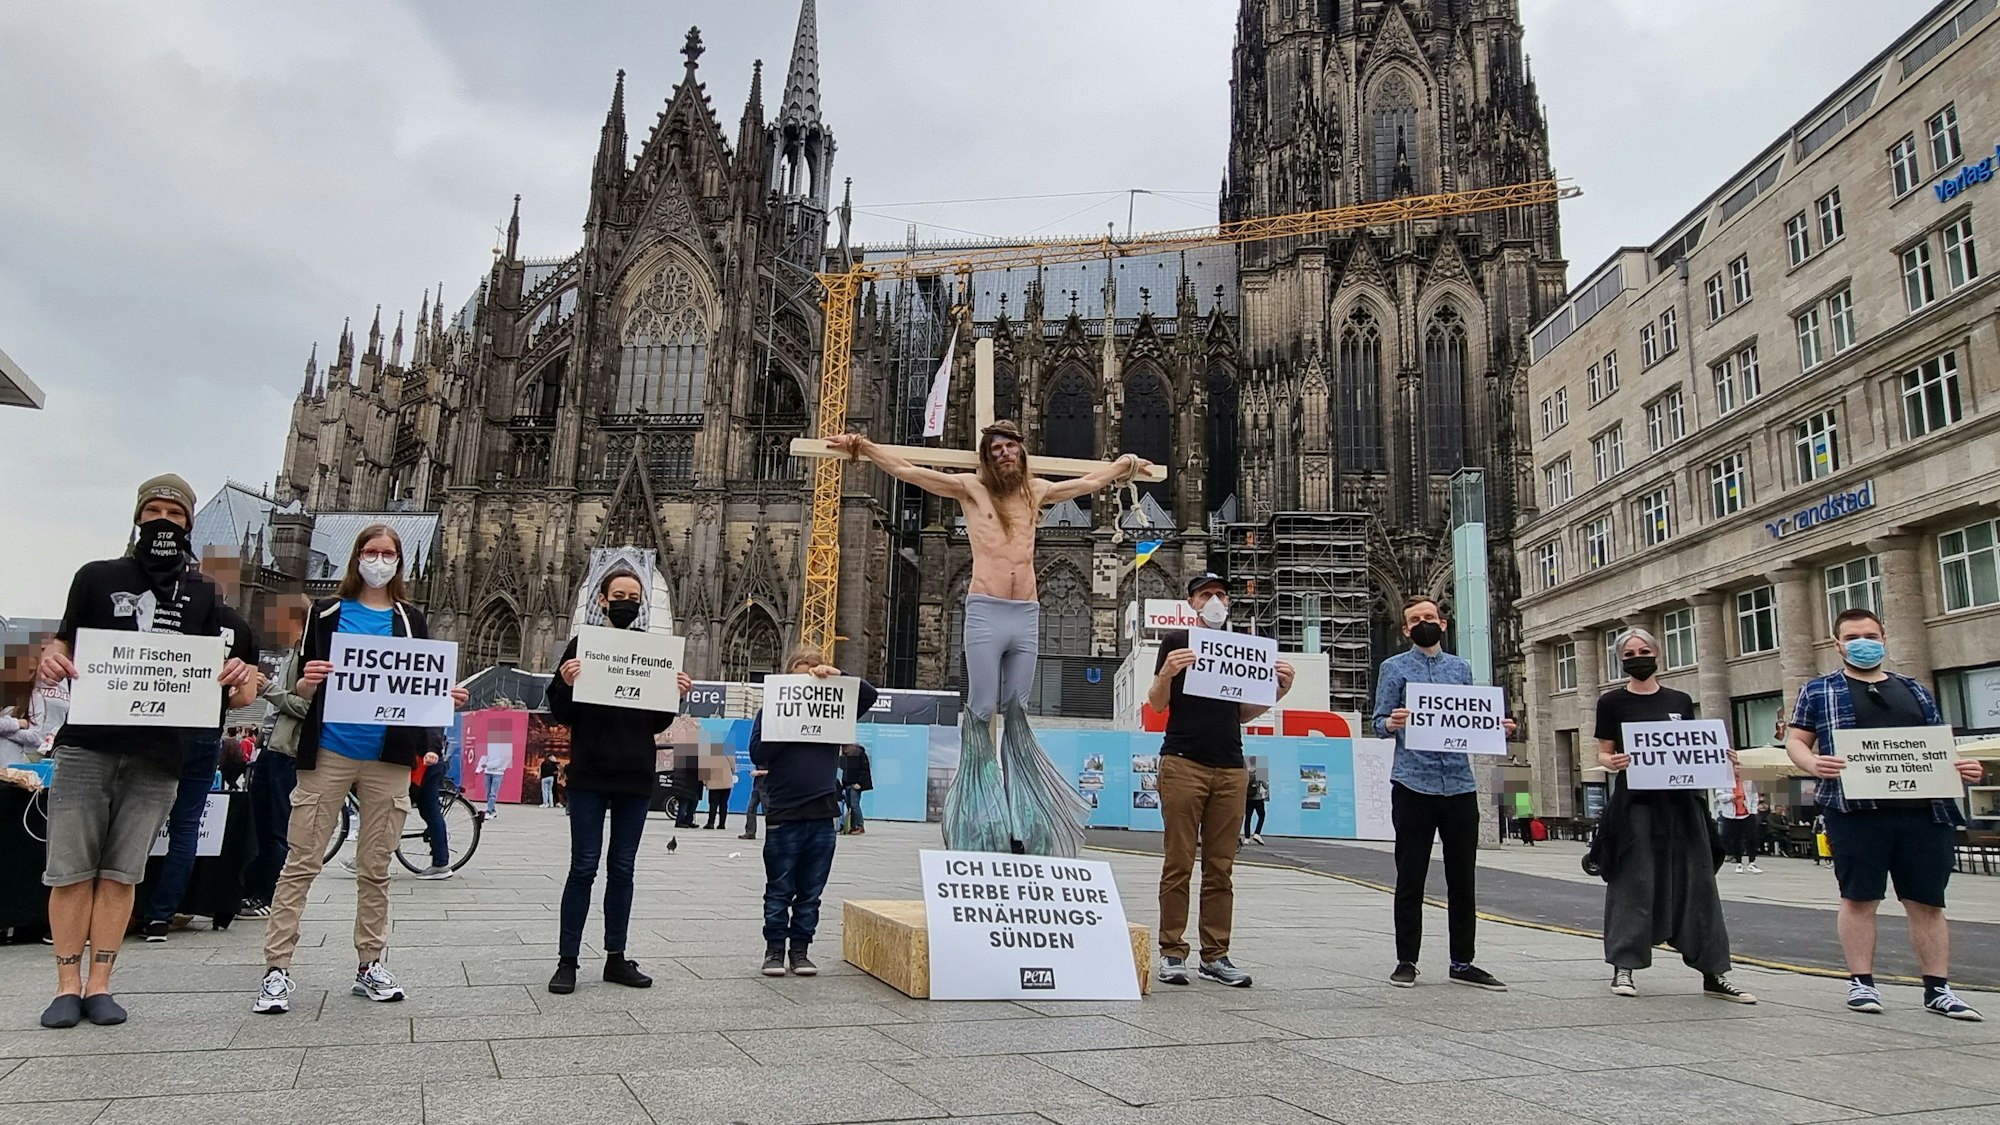 Die Tierschutzorganisation PETA hat am Kölner Dom für einen veganen Karfreitag demonstriert. Unter anderem mit einem Wassermann am Kreuz, der an Jesus erinnern soll.